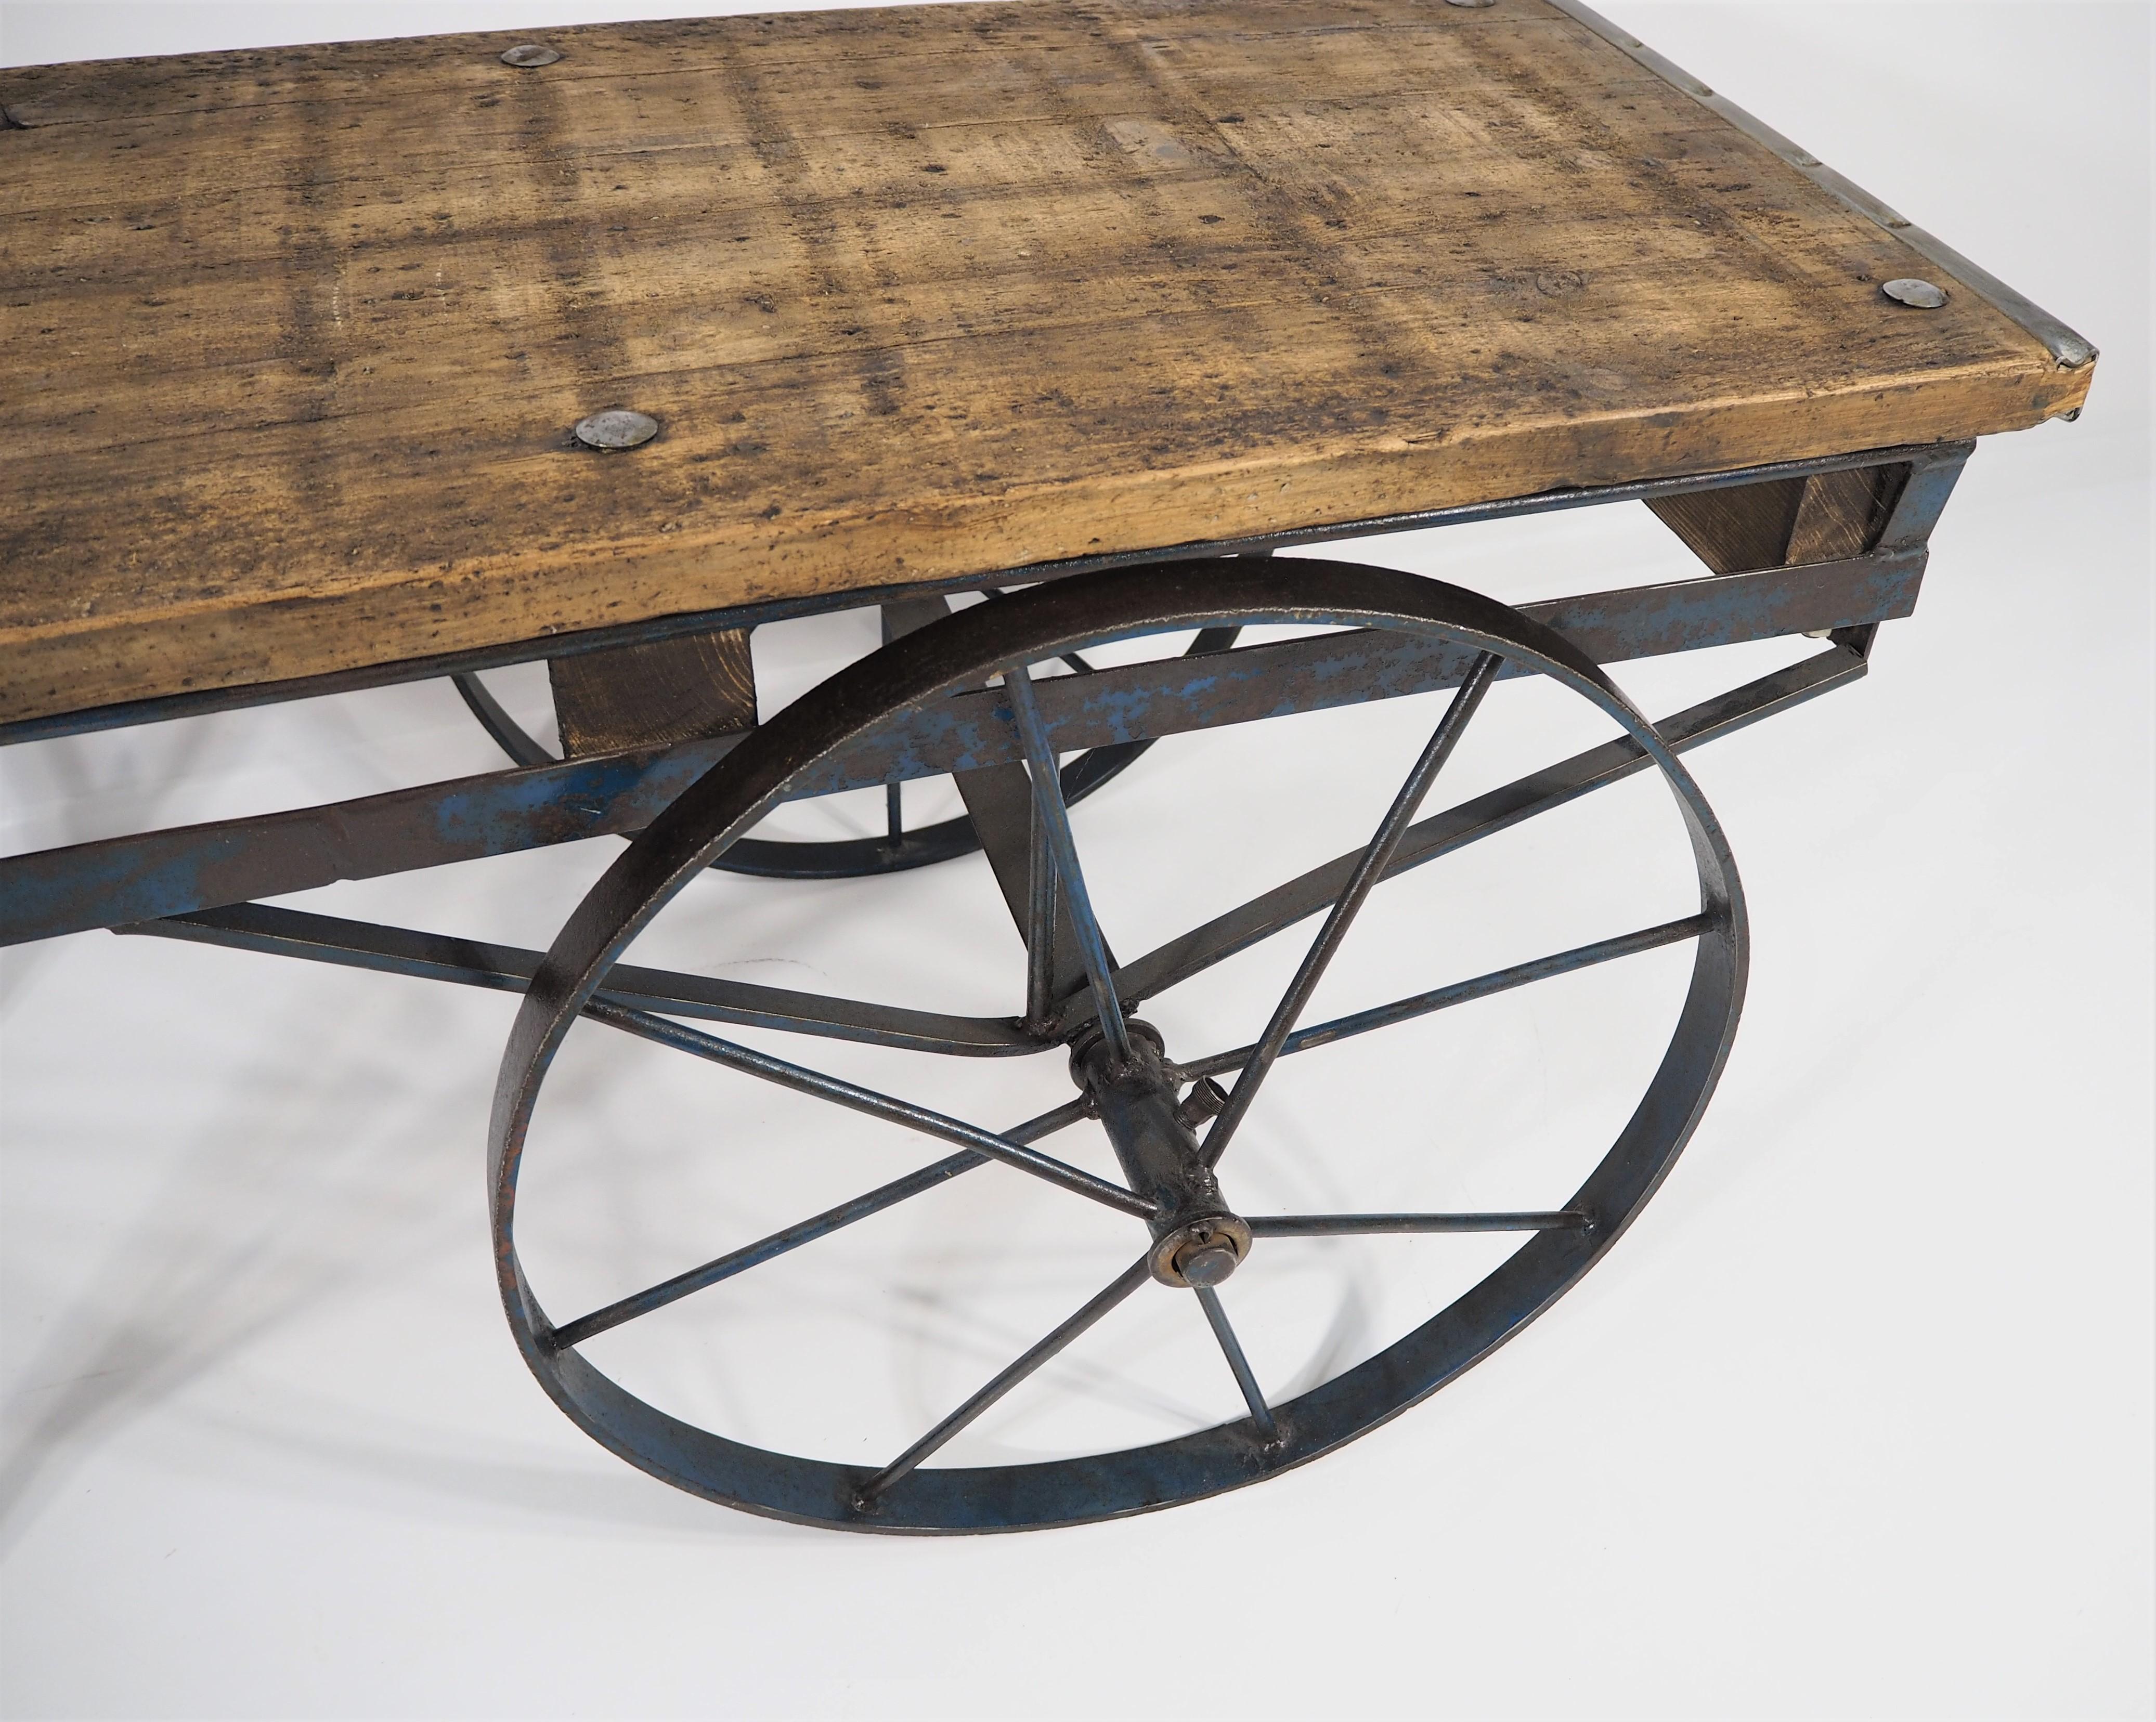 Industrial table. Original condition.